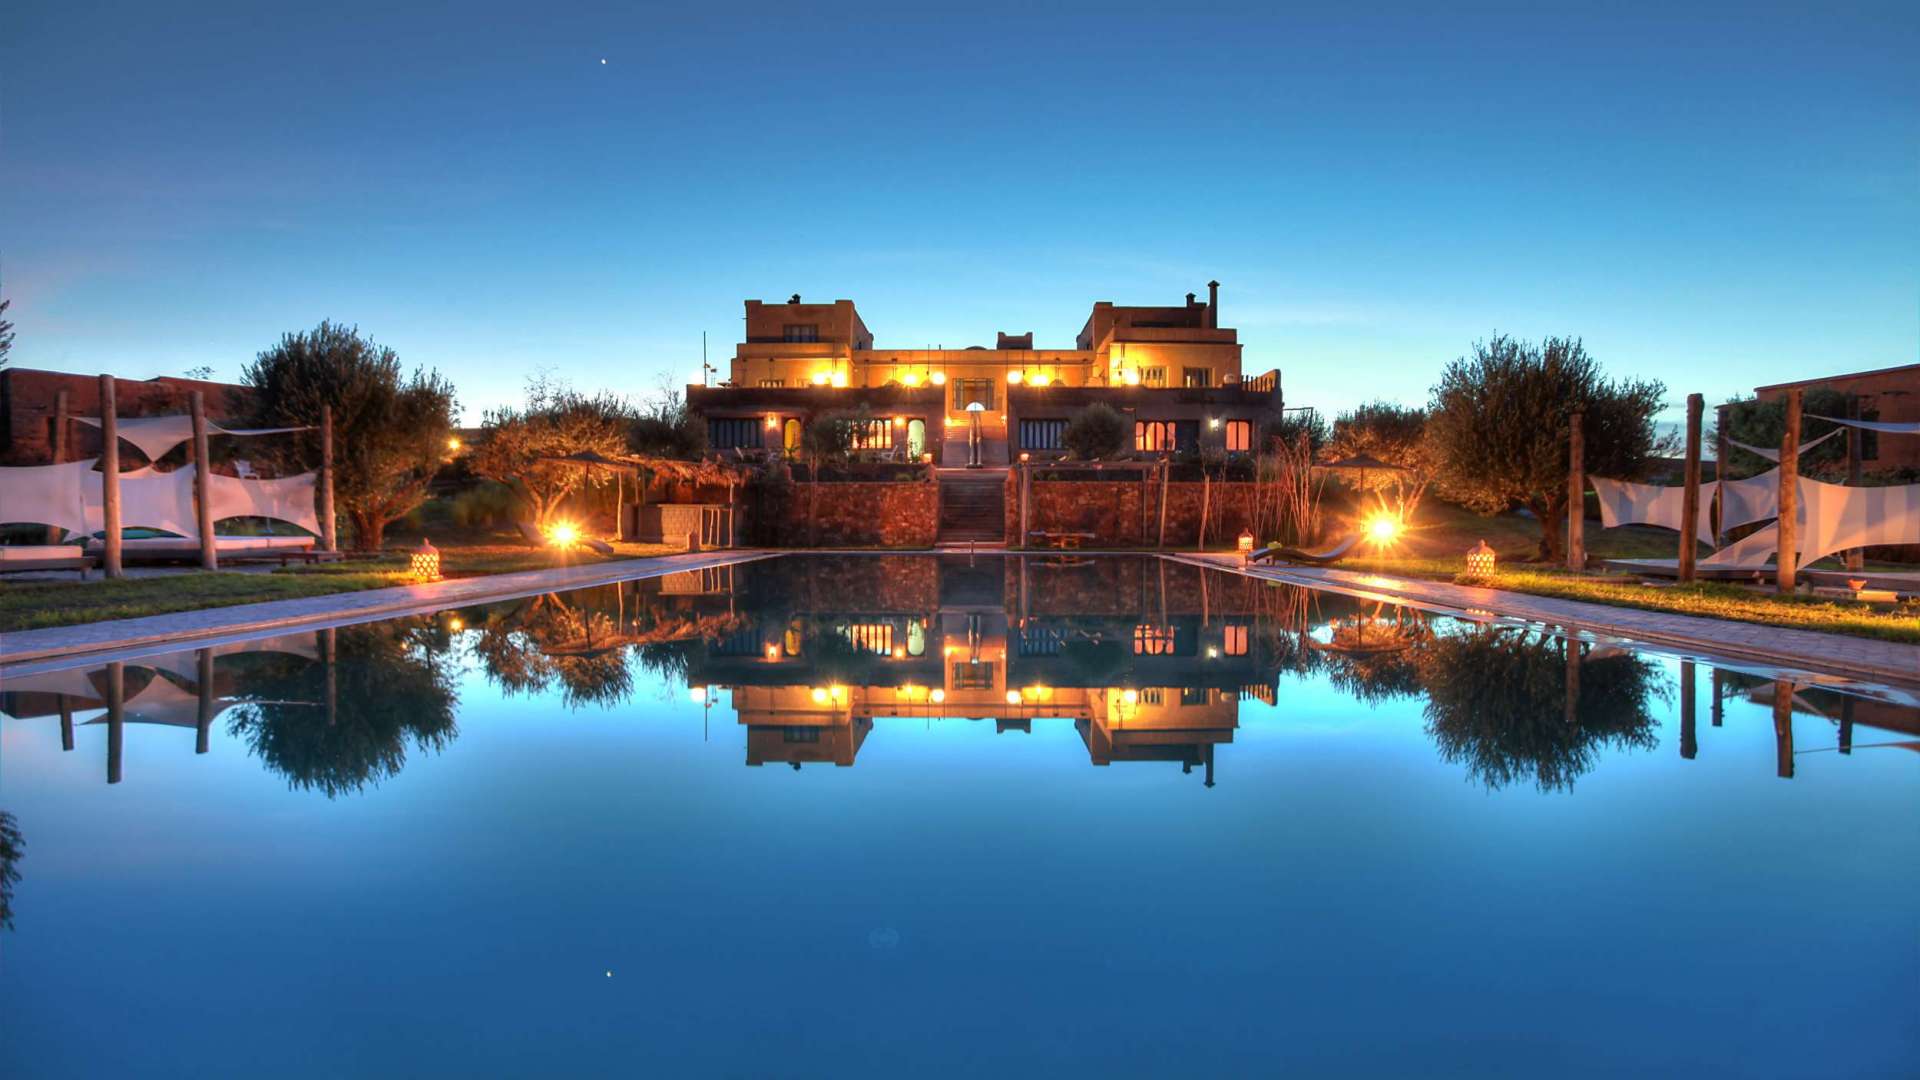 Location de vacances,Villa,Location maison d'hôtes 12 ch. avec services hôteliers ,Marrakech,Route Amizmiz